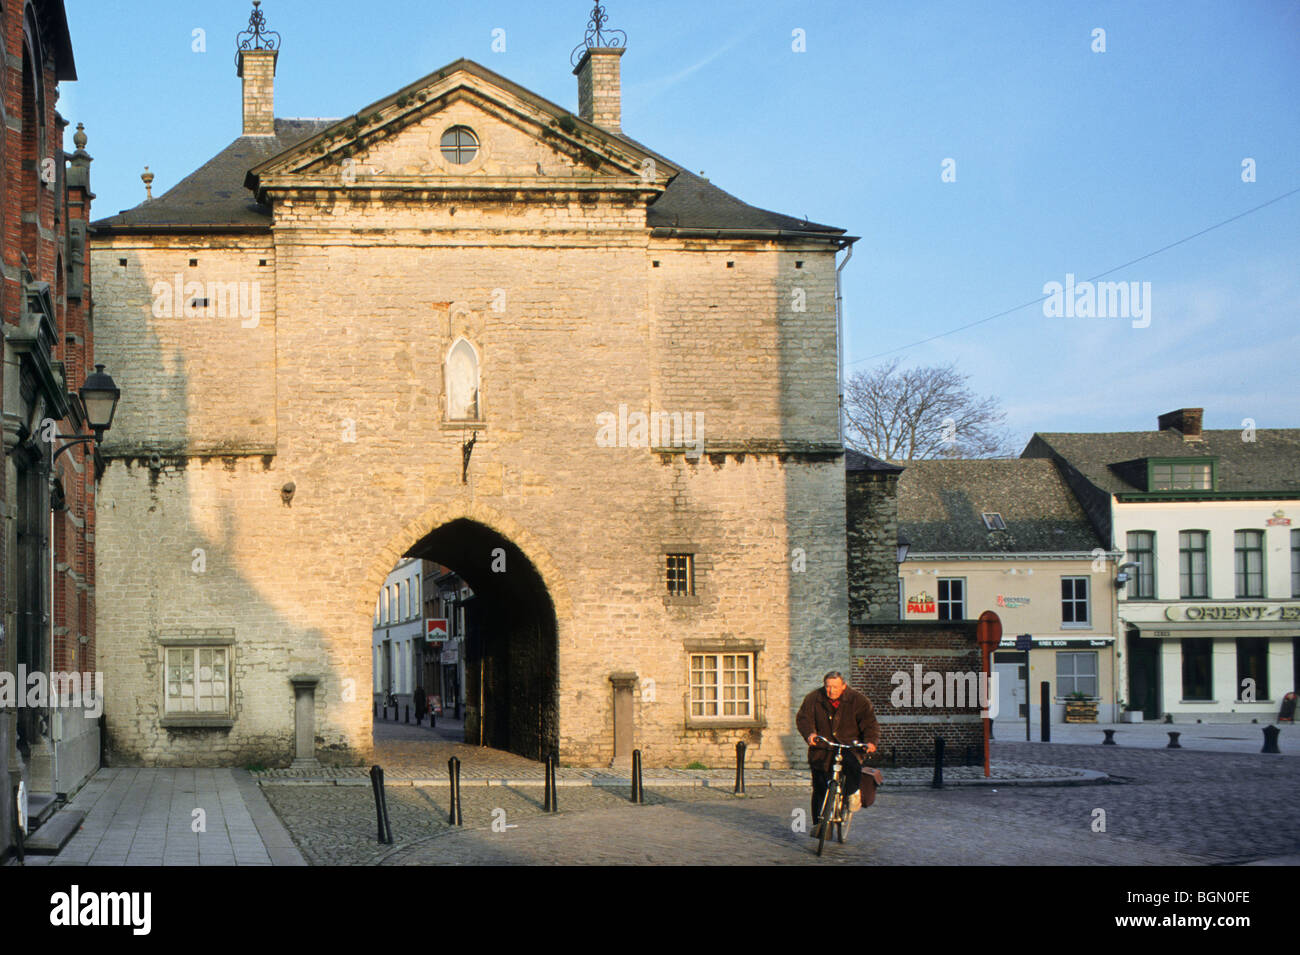 Das alte Gefängnis-Tor in der Stadt Lier, Belgien Stockfoto